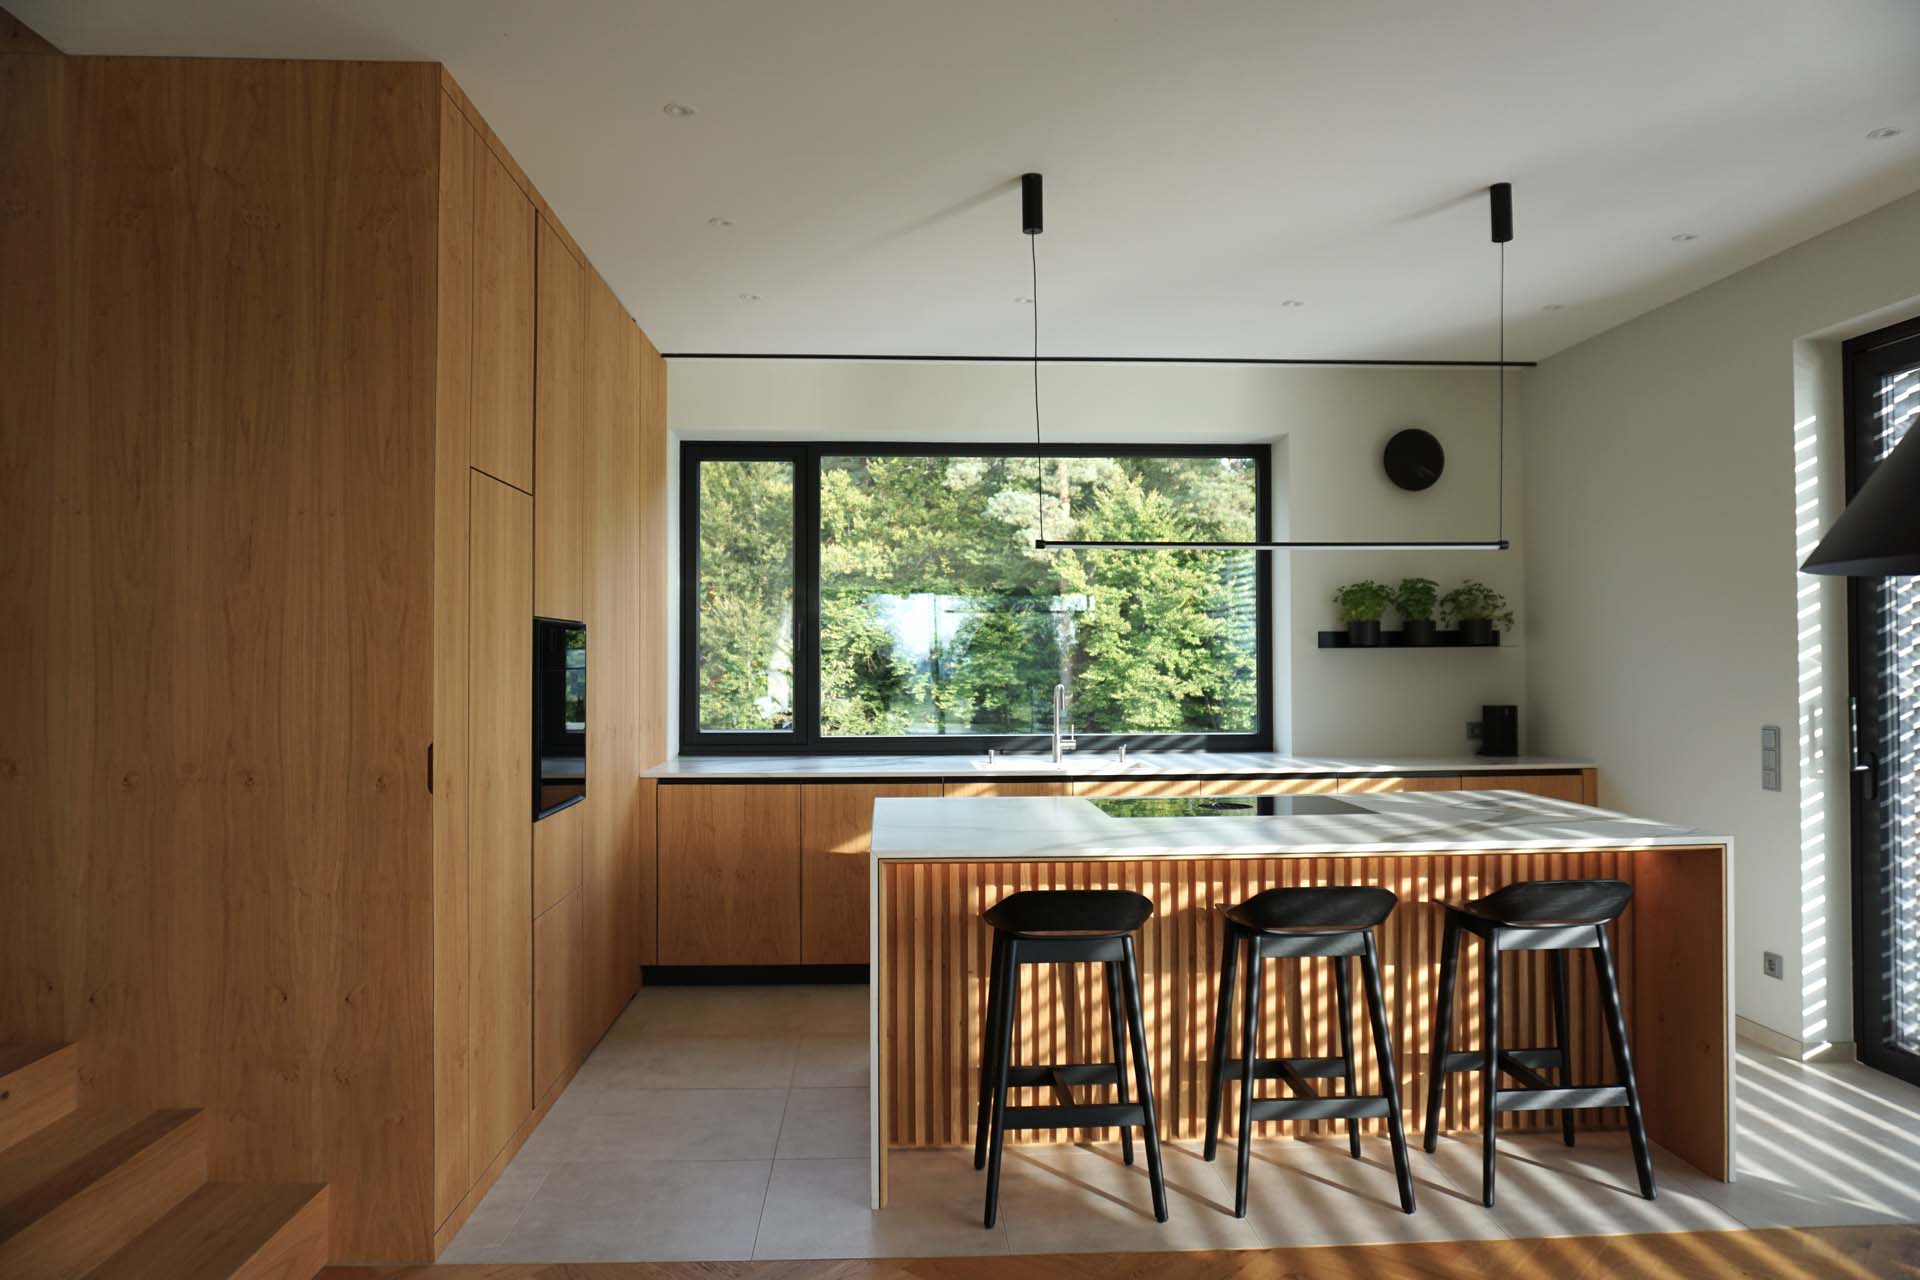 Eine moderne Küche mit eleganten Holzoberflächen, die durch große Fenster durch natürliches Licht beleuchtet wird, mit einer zentralen Insel mit Barhockern in einem Haus in der Steiermark.